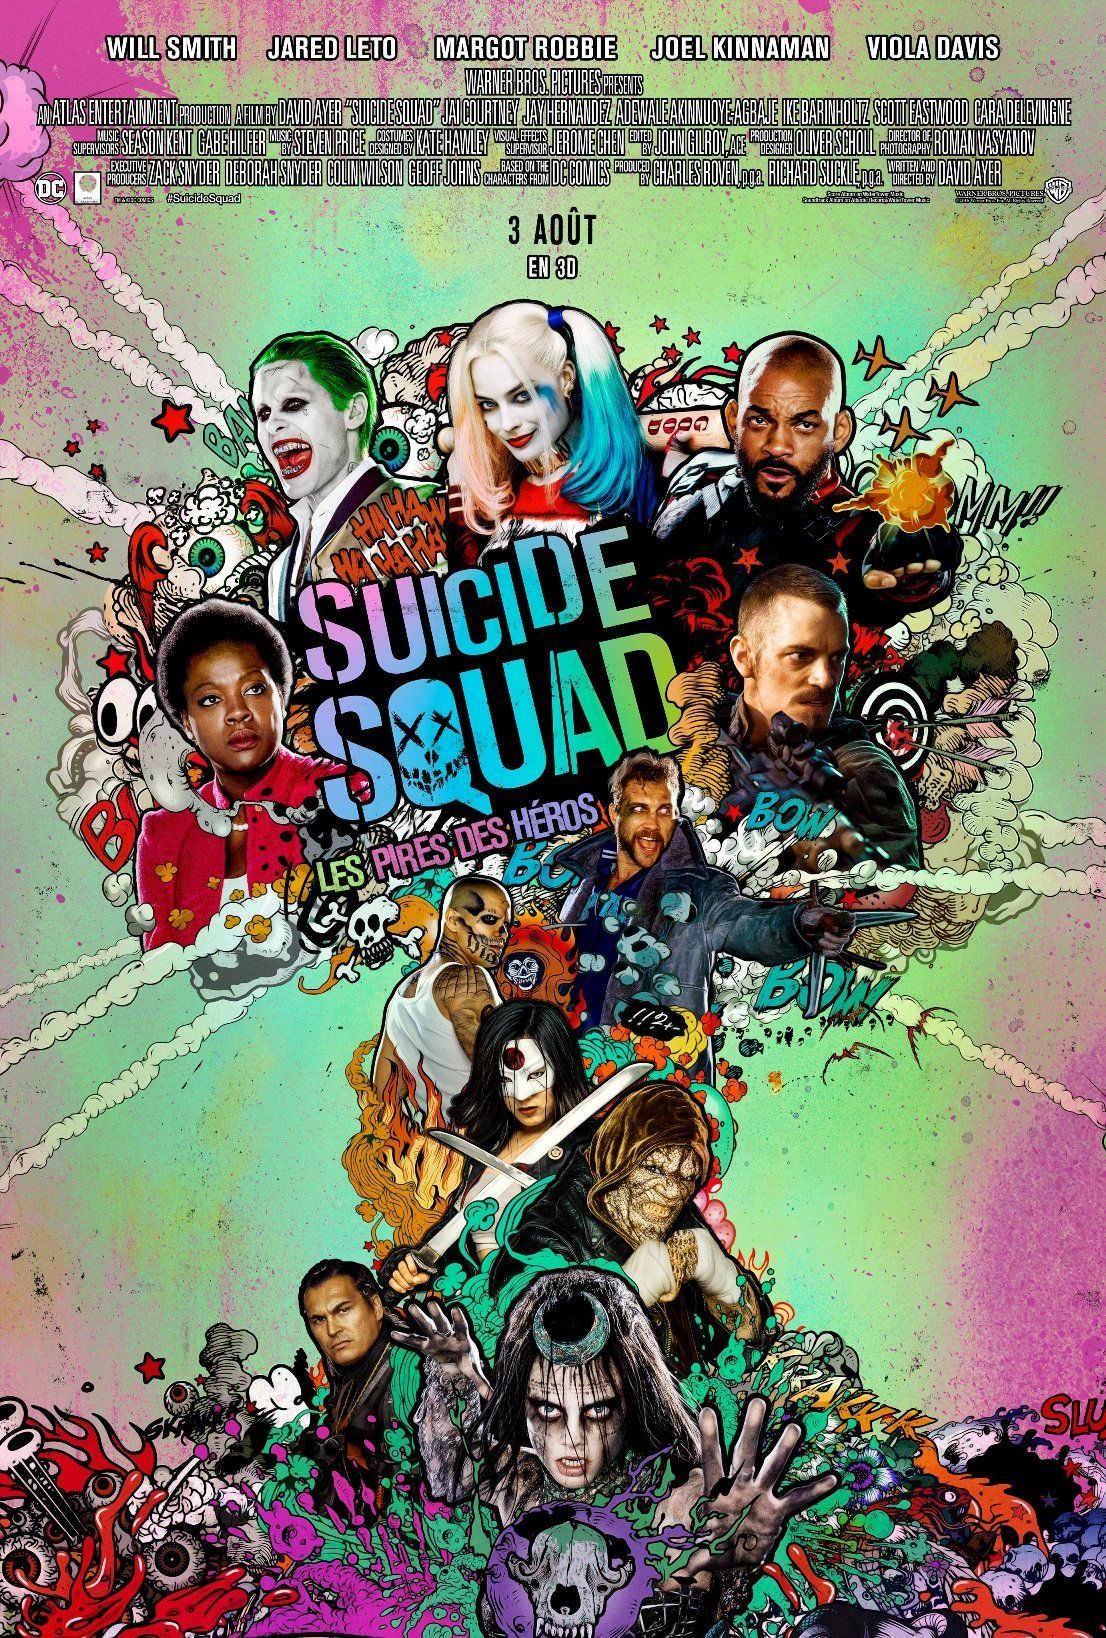 Affiches, posters et images de Suicide Squad (2016) - SensCritique1106 x 1638